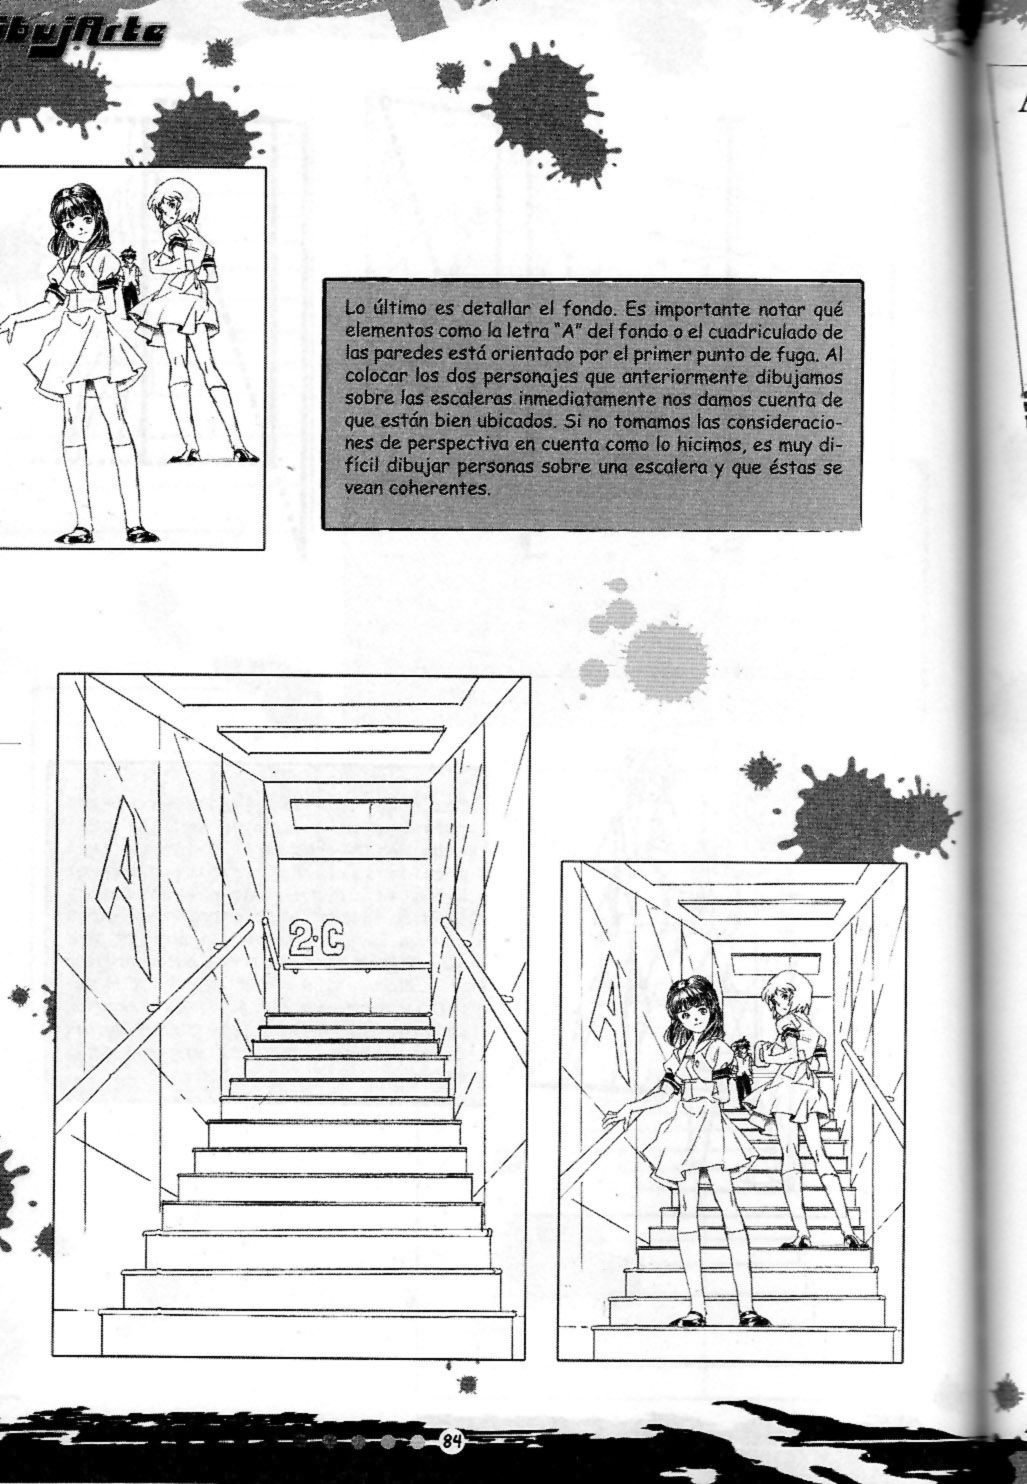 DibujArte Epecial Manga #15/20 - Especial fondos [Spanish] 83